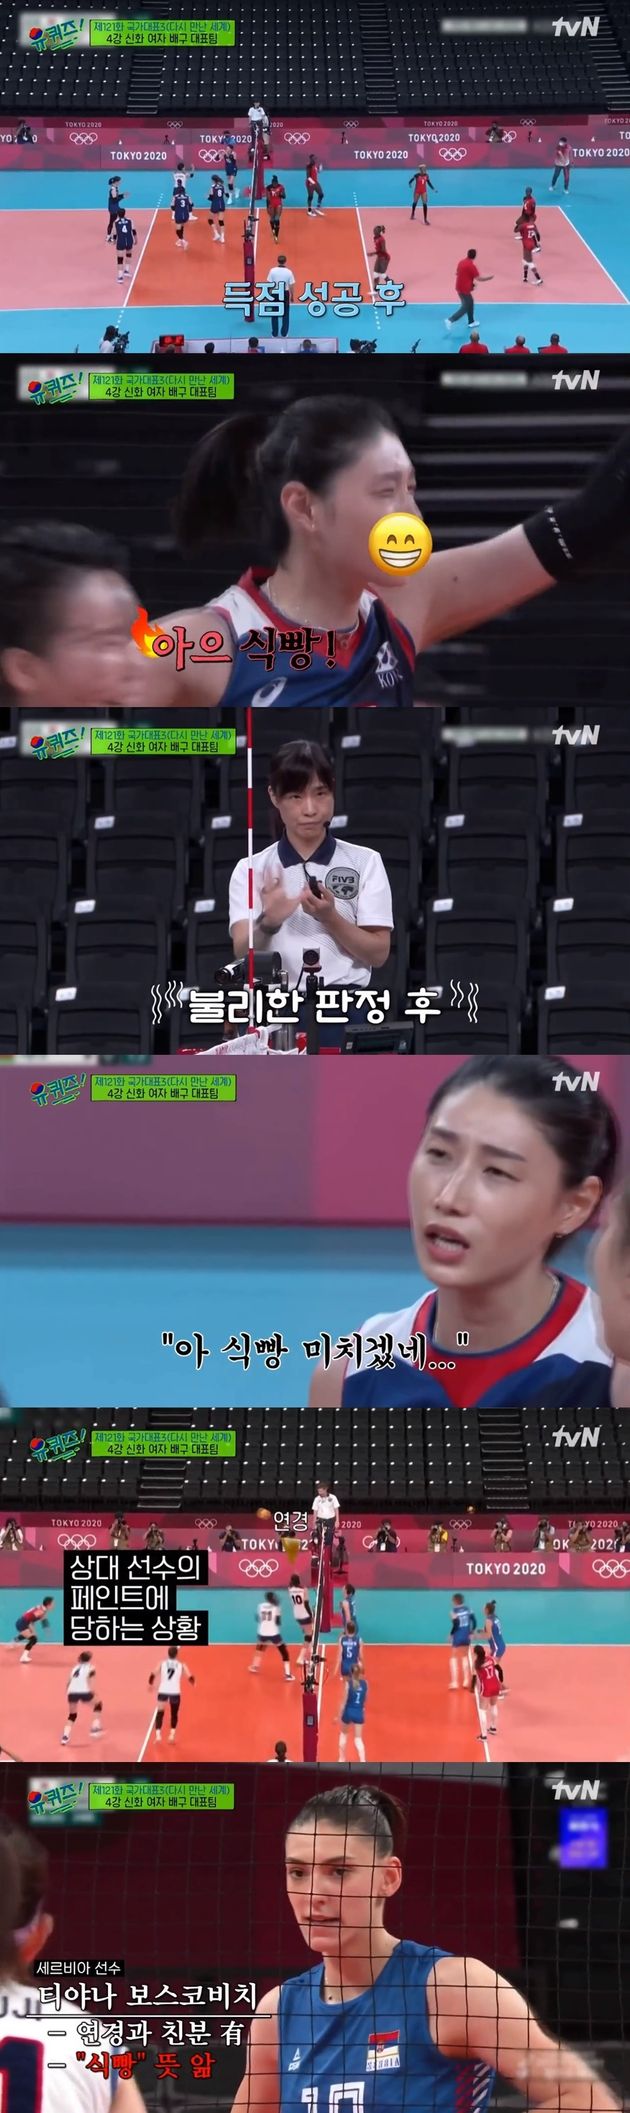 경기 중 '식빵'을 외치는 김연경 선수의 모습.